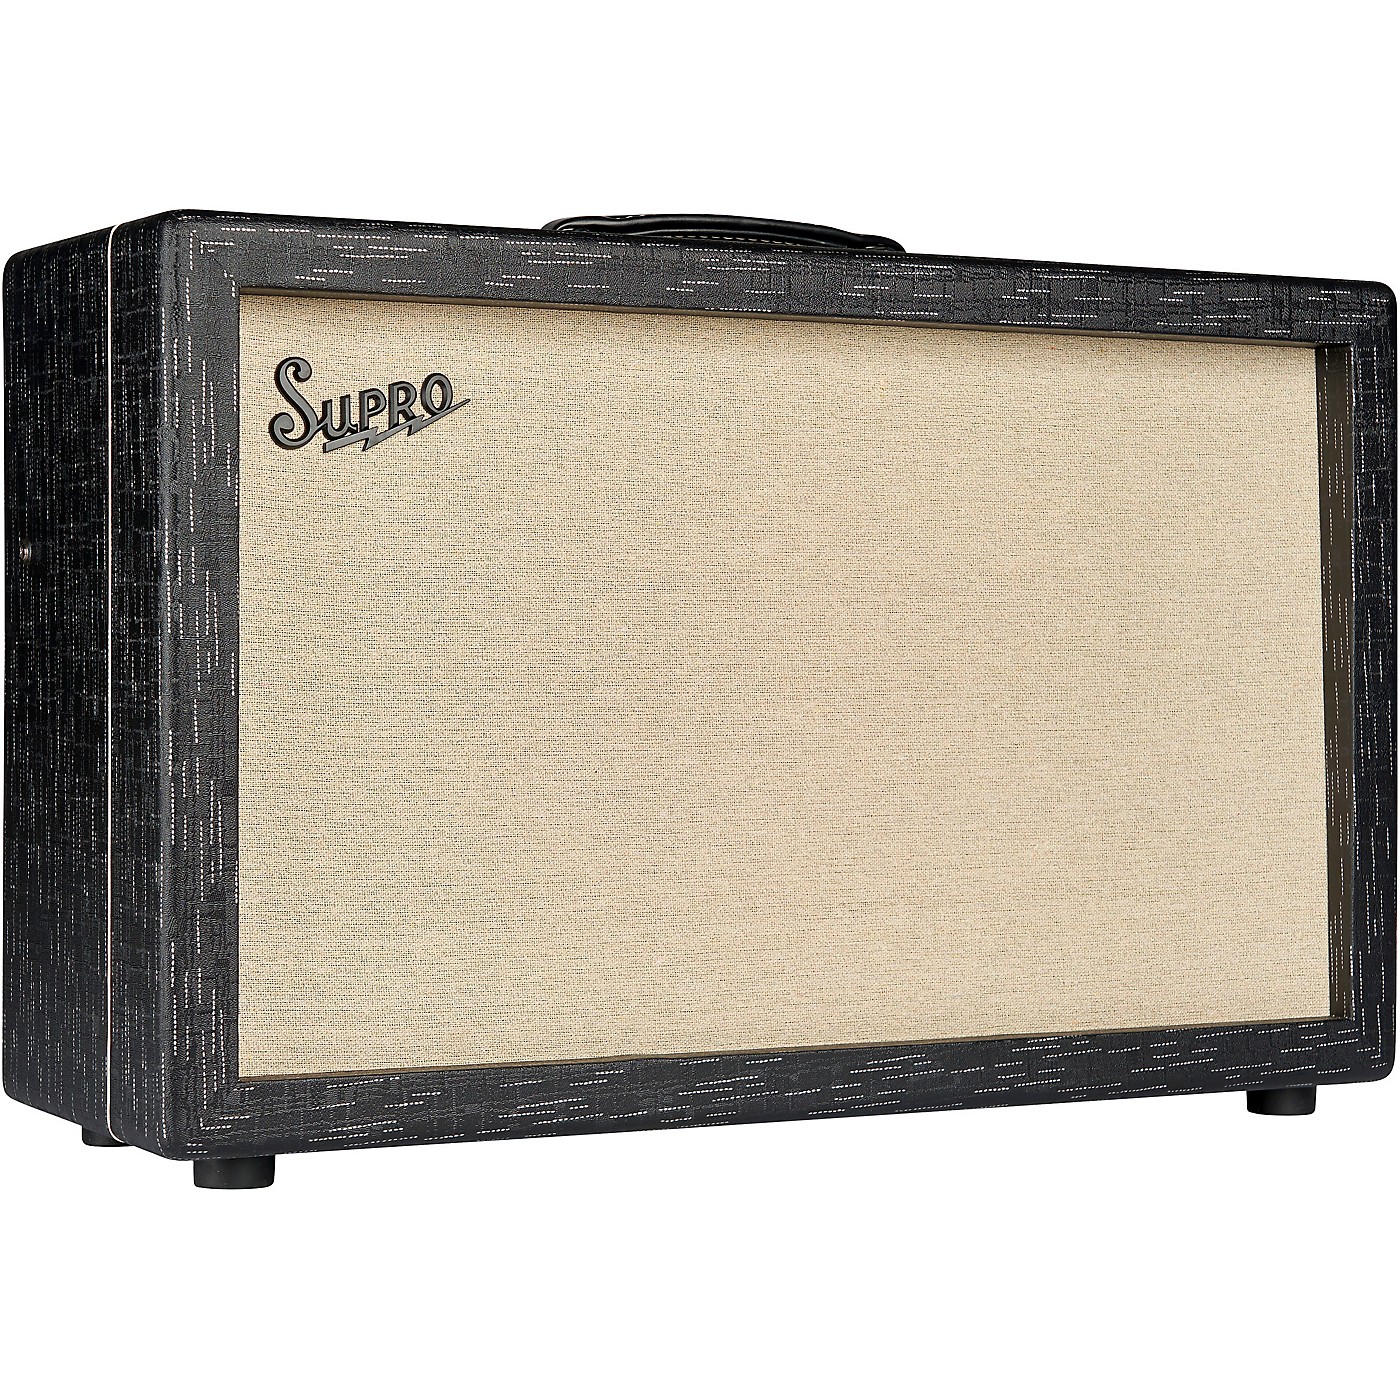 Supro Royale 1933r 2x12 Guitar Tube Combo Amp thumbnail